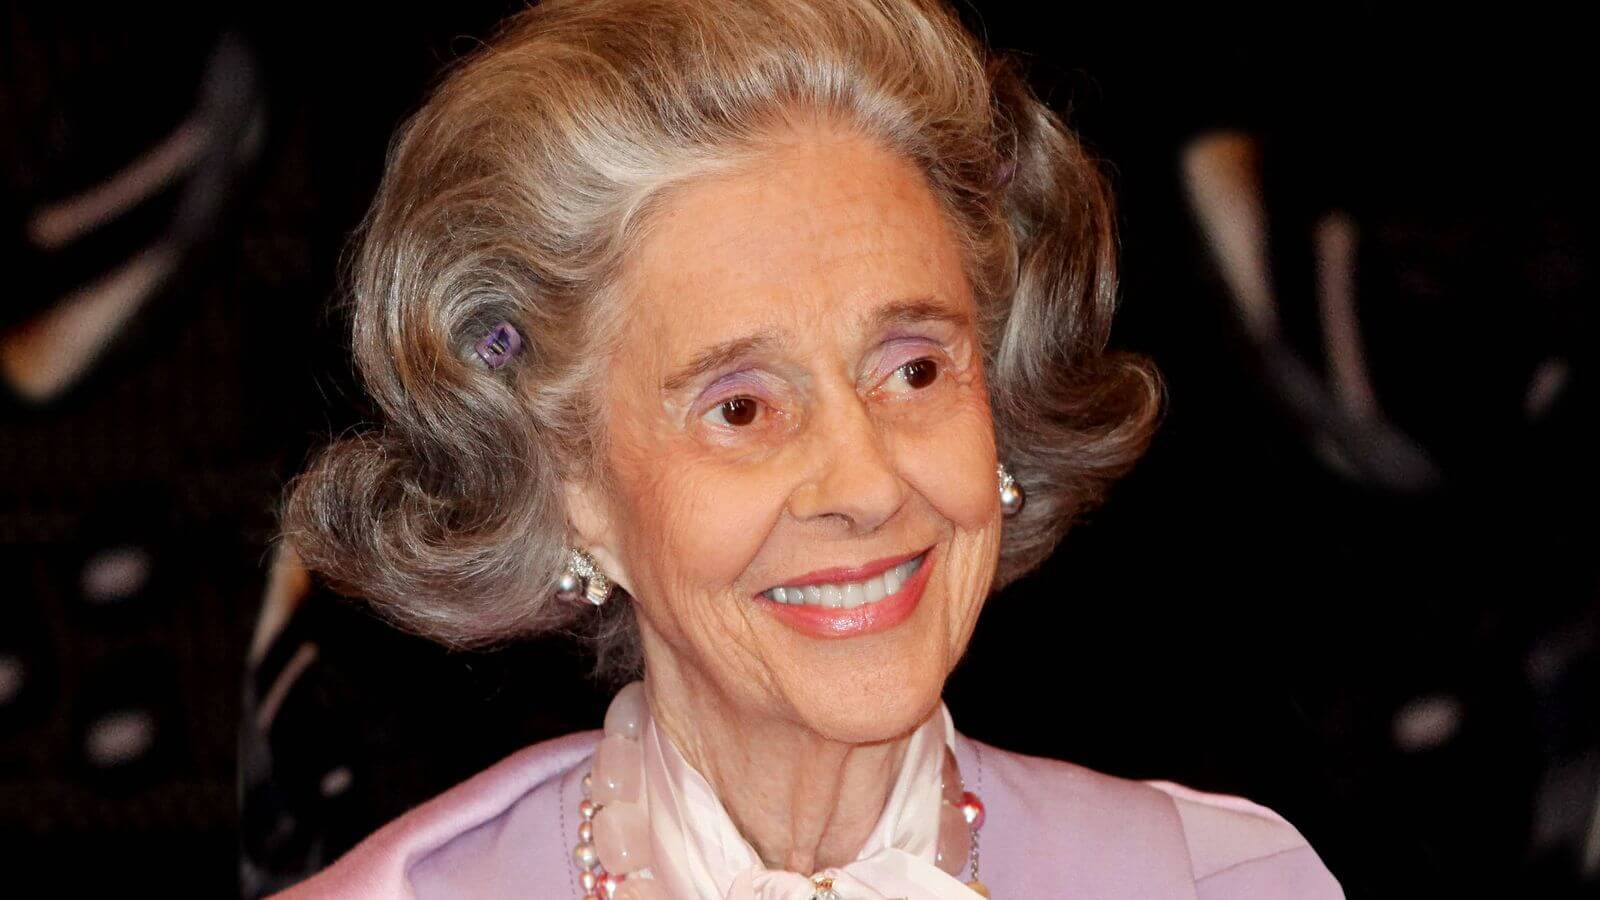 L'Espagnole Fabiola de Mora y Aragón a été reine consort de Belgique entre 1960 et 1993, après avoir épousé le roi Baudouin. Elle est décédée en 2014.